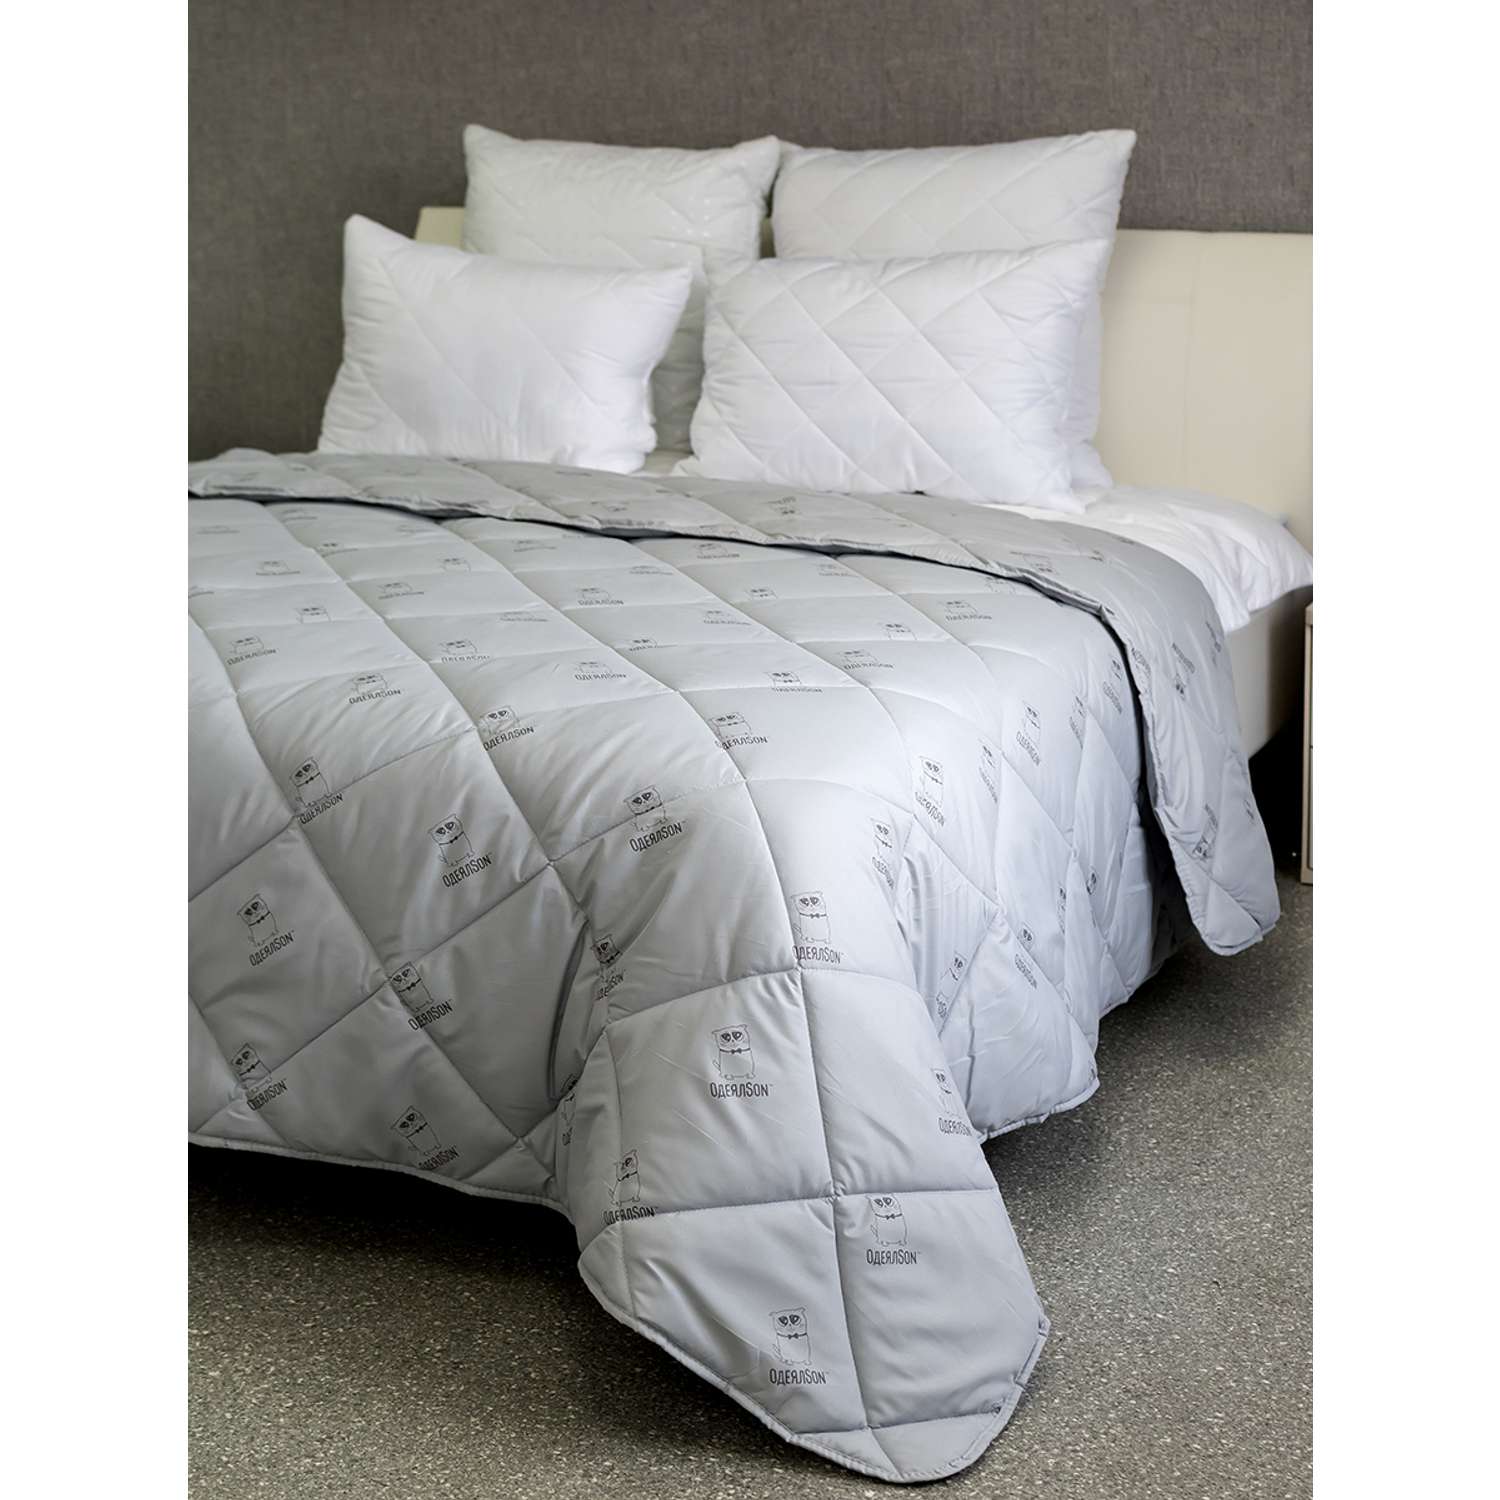 Одеяло Мягкий сон одеялсон 172x205 см - фото 2